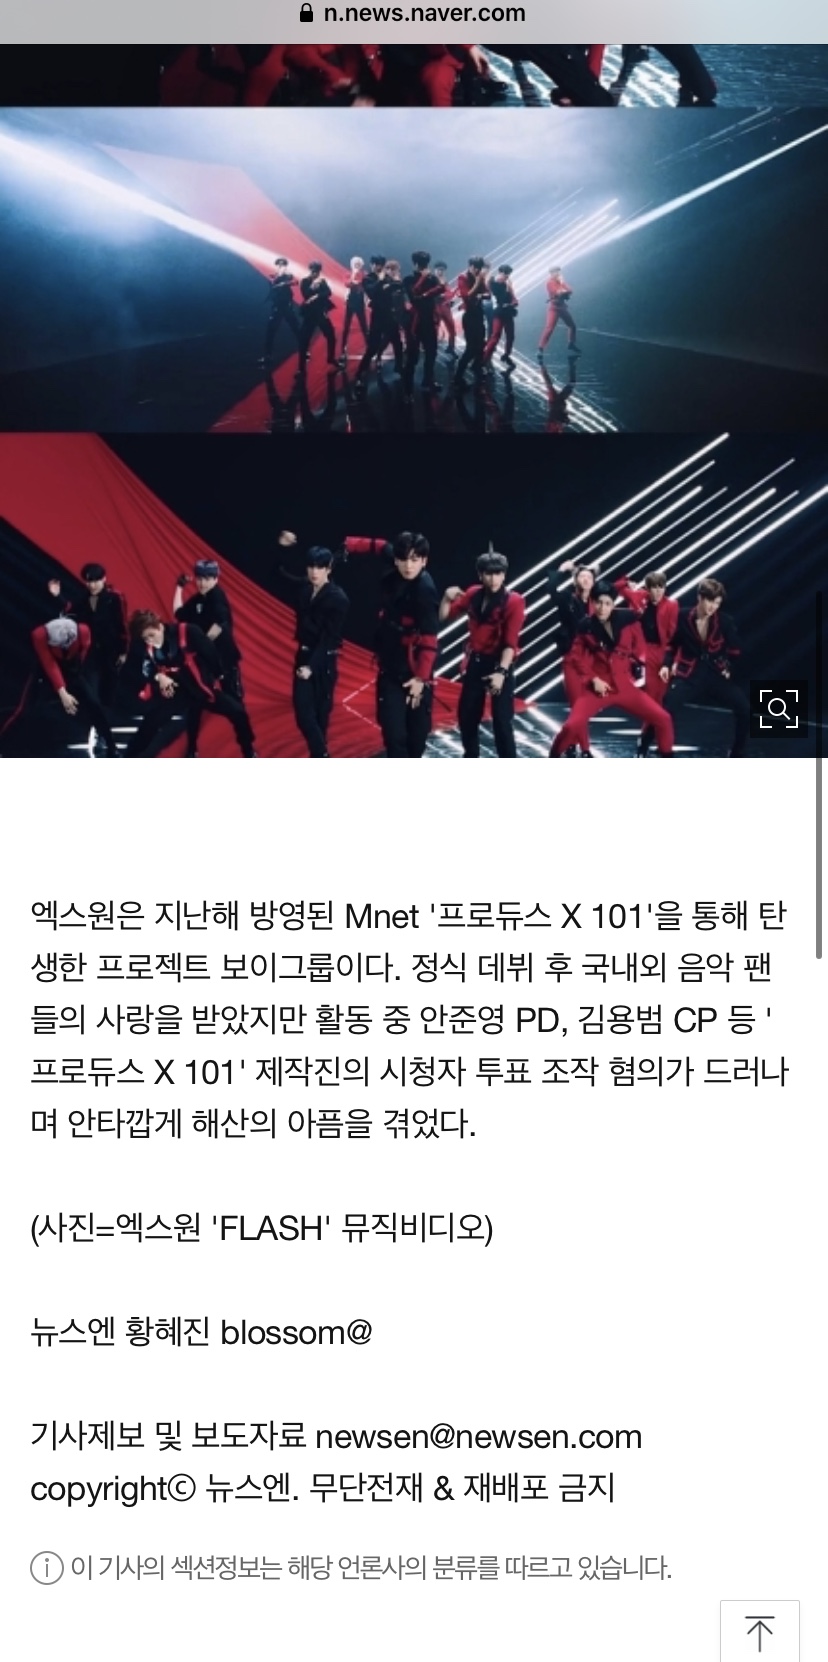 [정보/소식] 엑스원 'FLASH' MV 1억뷰 돌파, 여전히 뜨거운 팬사랑 | 인스티즈